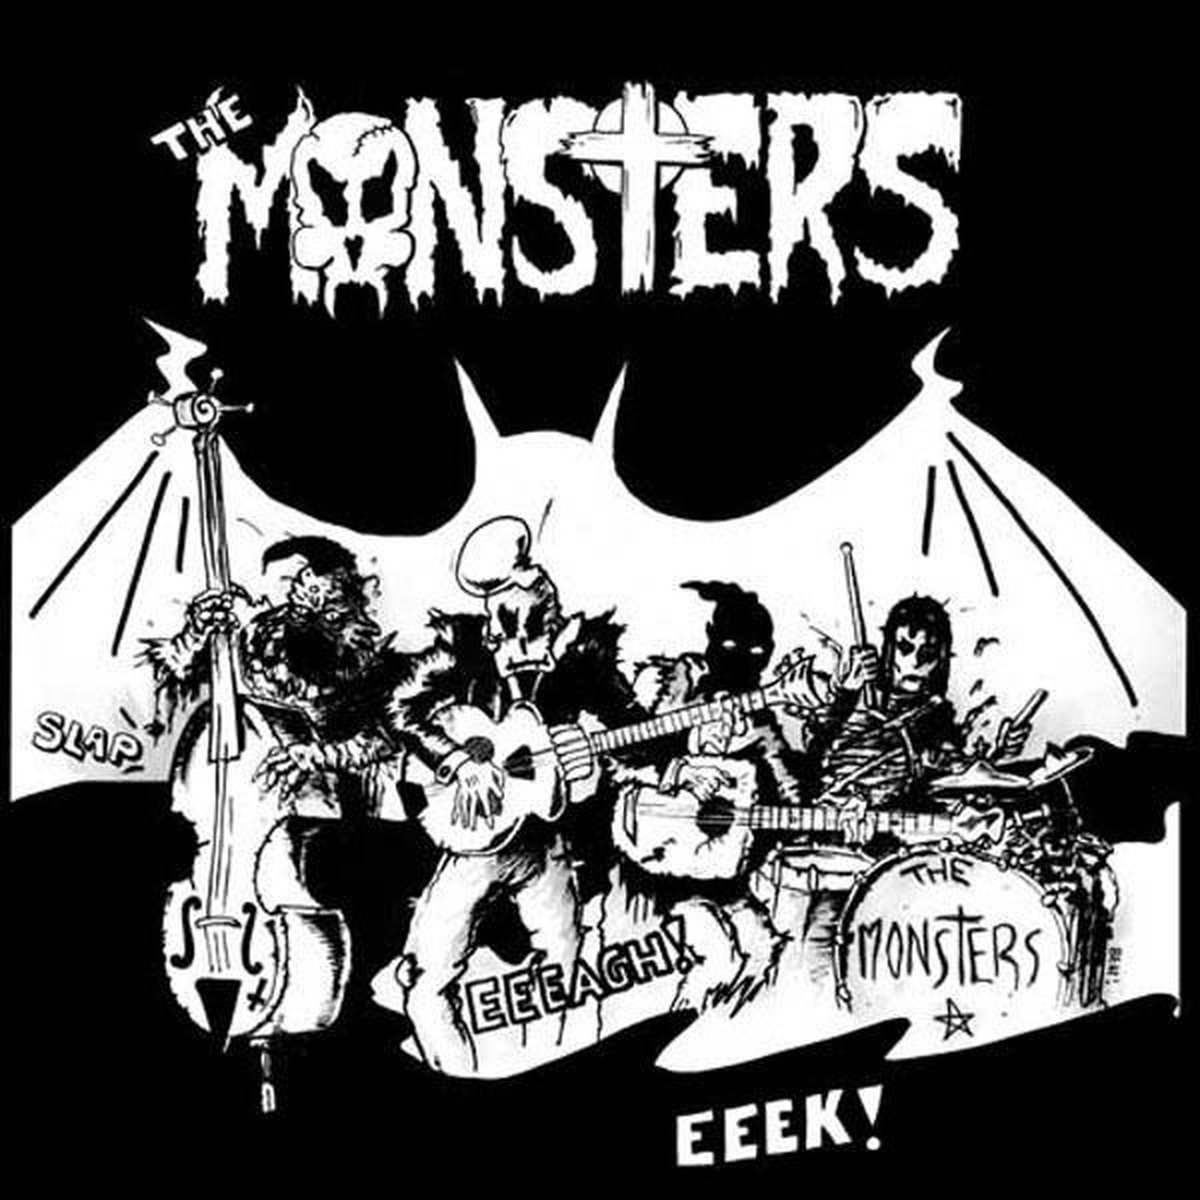 Masks - Monsters